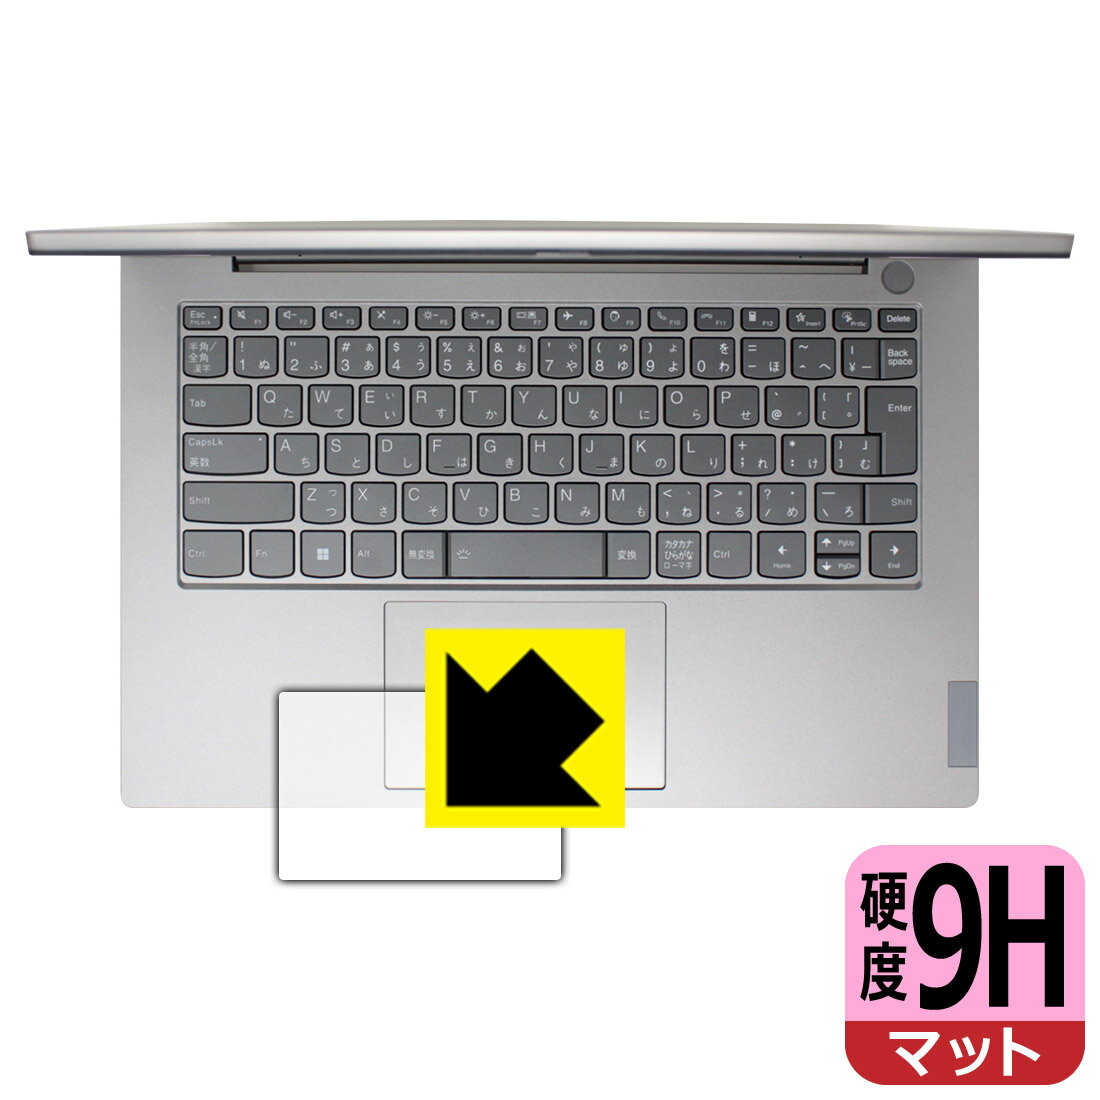 9H高硬度保護フィルム ThinkBook 14 Gen 4 (タッチパッド用) 日本製 自社製造直販